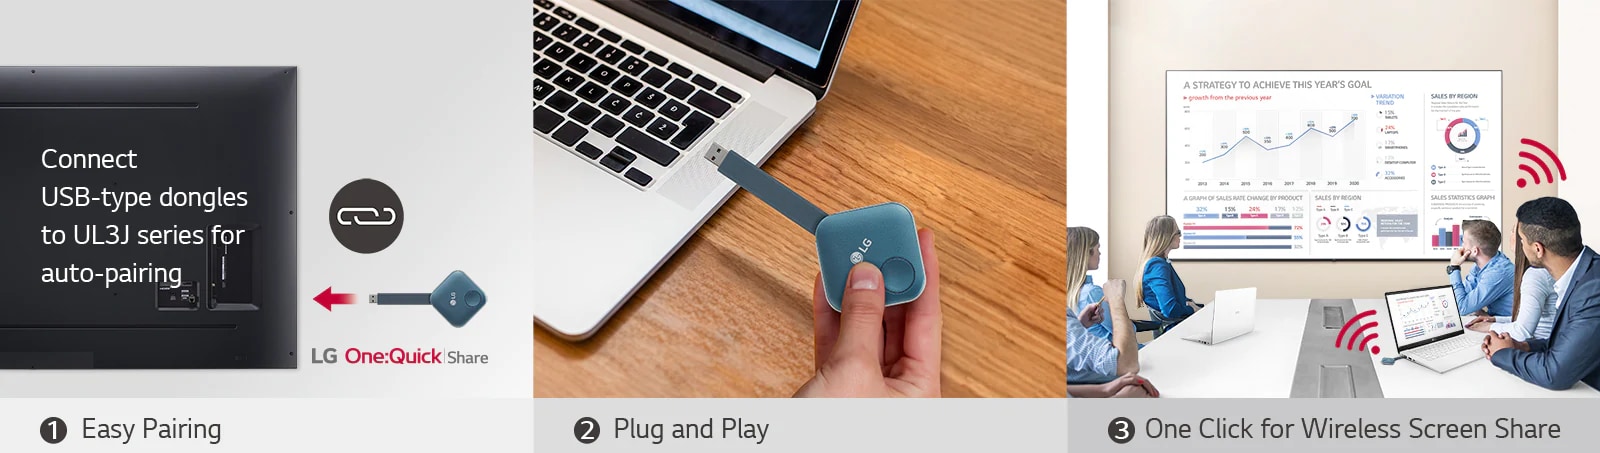 «Он состоит из изображений, отображающих трехэтапные инструкции по установке LG One: USB-ключ Quick Share и общий доступ к персональному экрану. Первое изображение соединяет USB-ключ и вывеску LG. Второе изображение описывает человека, держащего USB-ключ, пытающегося чтобы подключить его к ПК. На последнем изображении показаны люди, которые проводят встречу, подключив USB-ключ к ноутбуку, а затем предоставив общий доступ к экрану через UL3J на стене ».